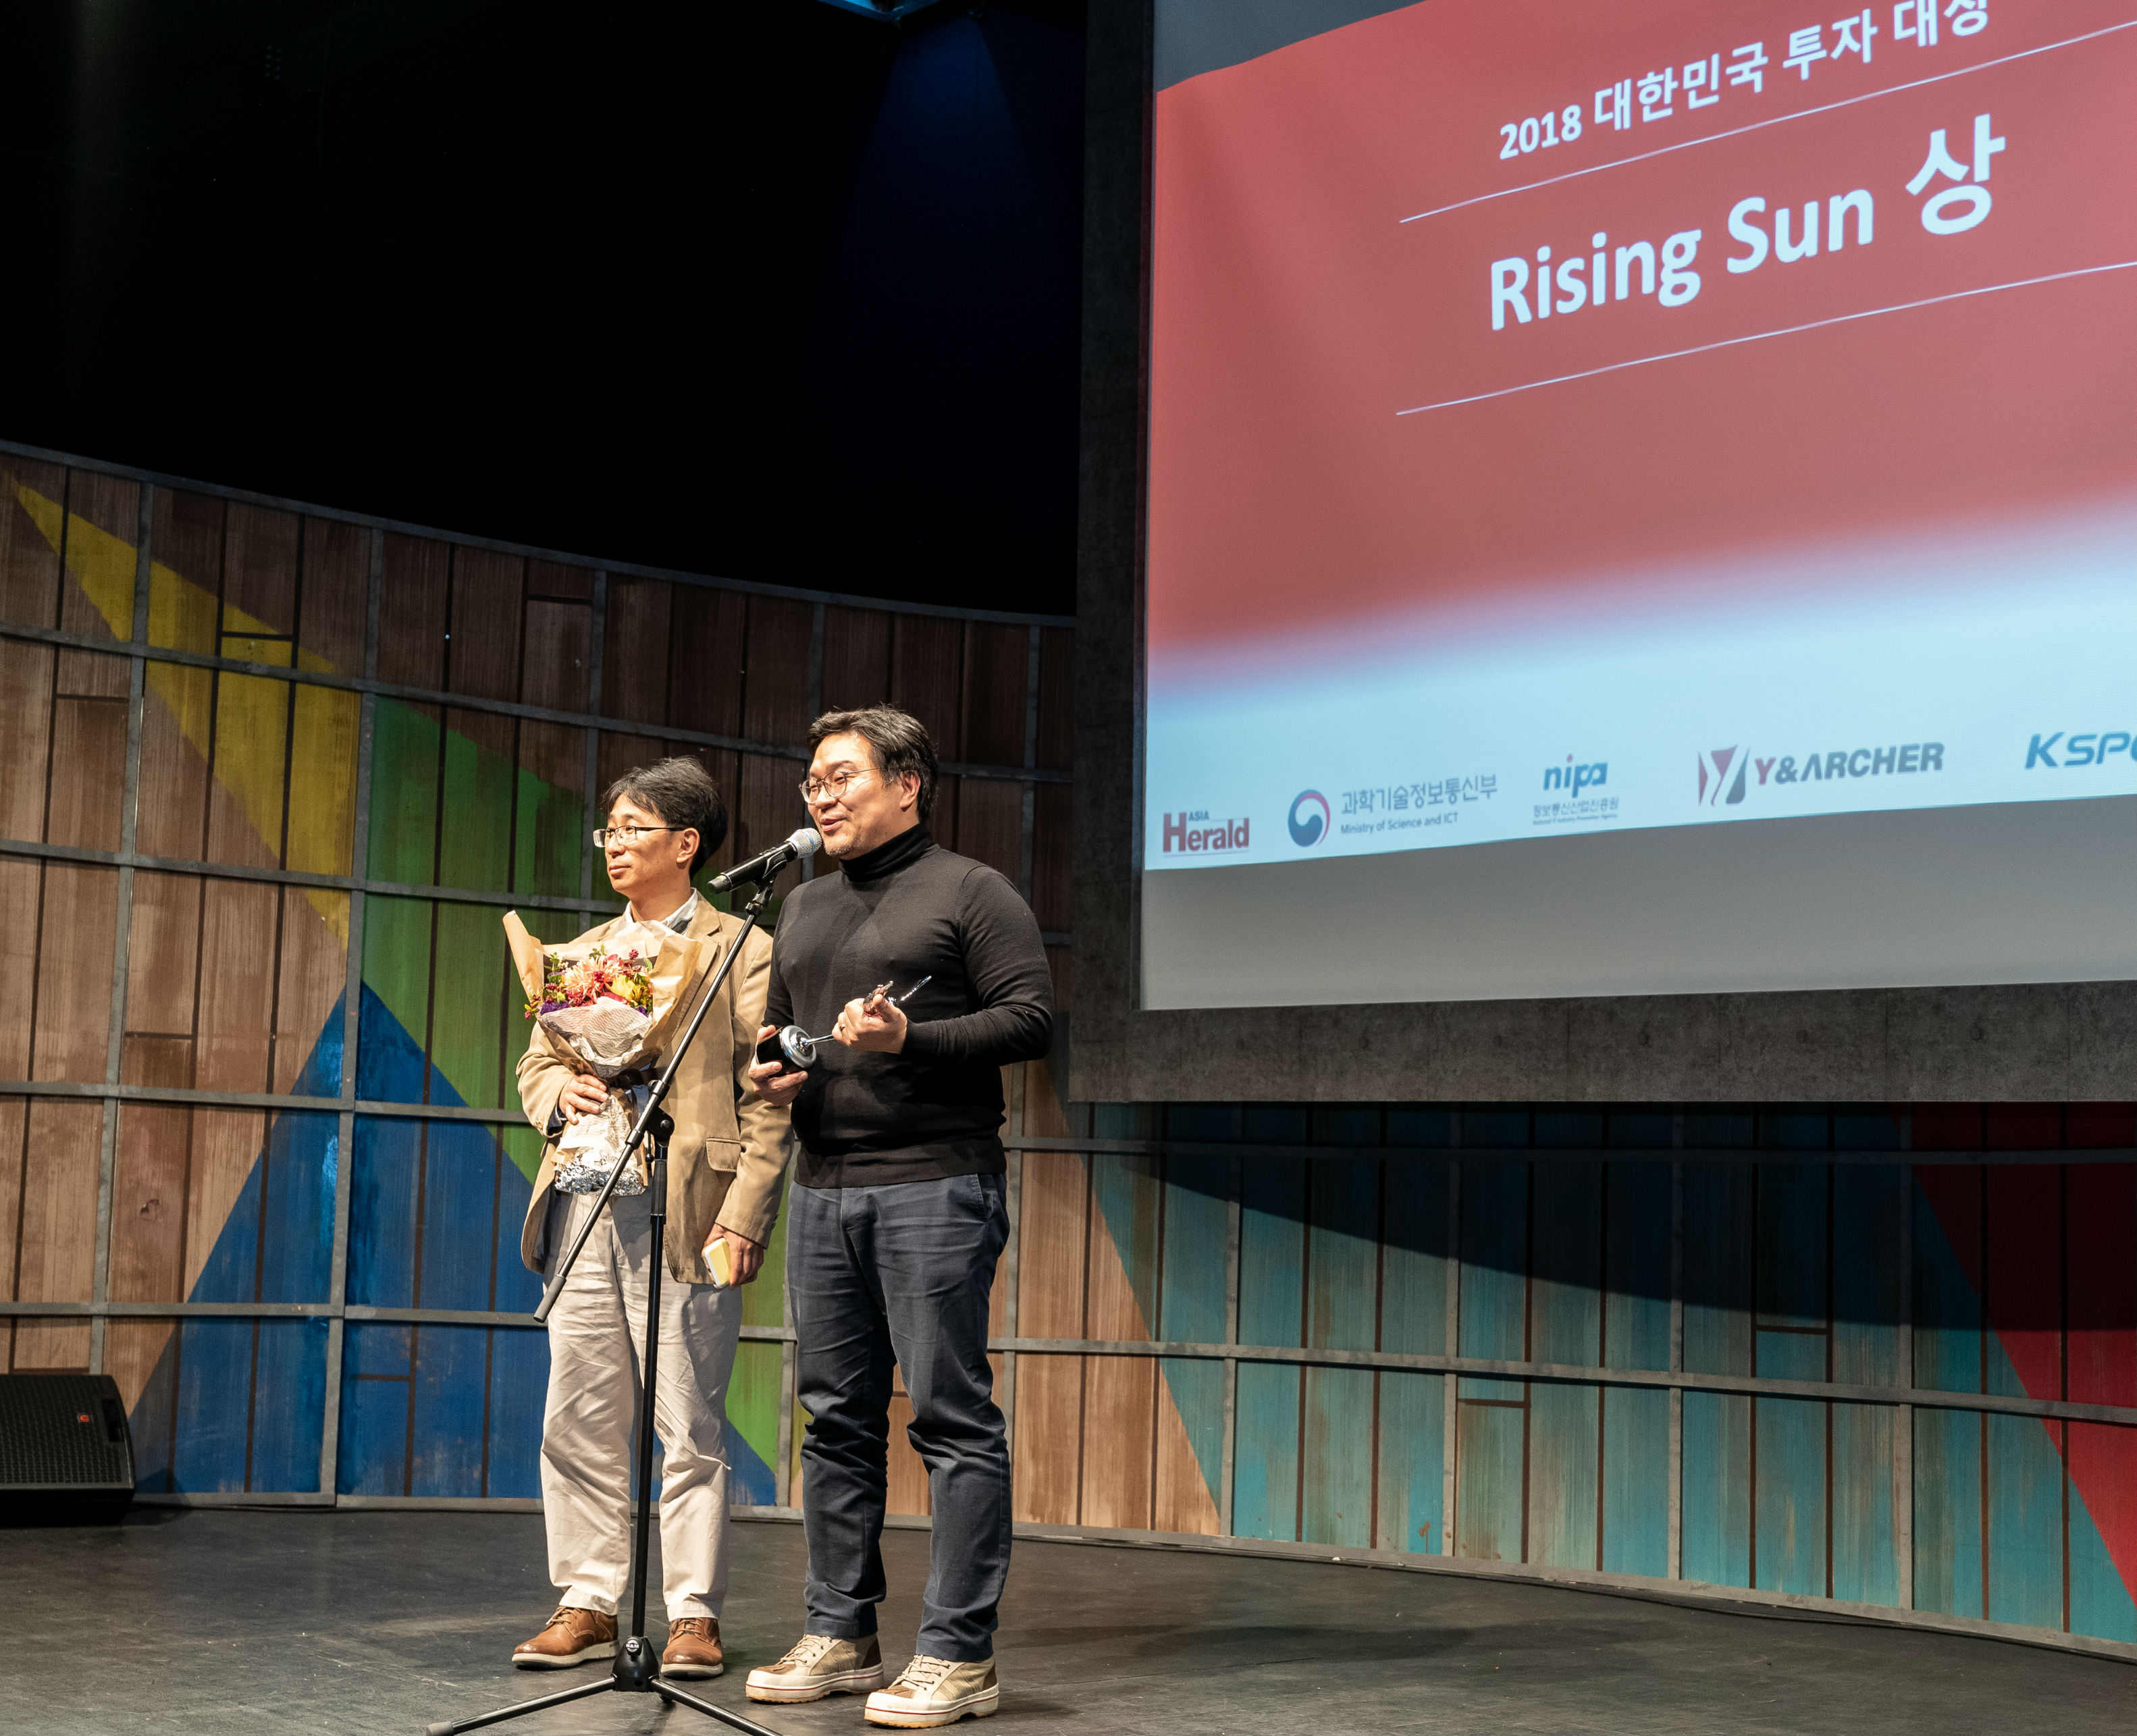 ‘2018 대한민국 투자 대상’ Rising Sun 부문에서 수상한 인라이트벤처스